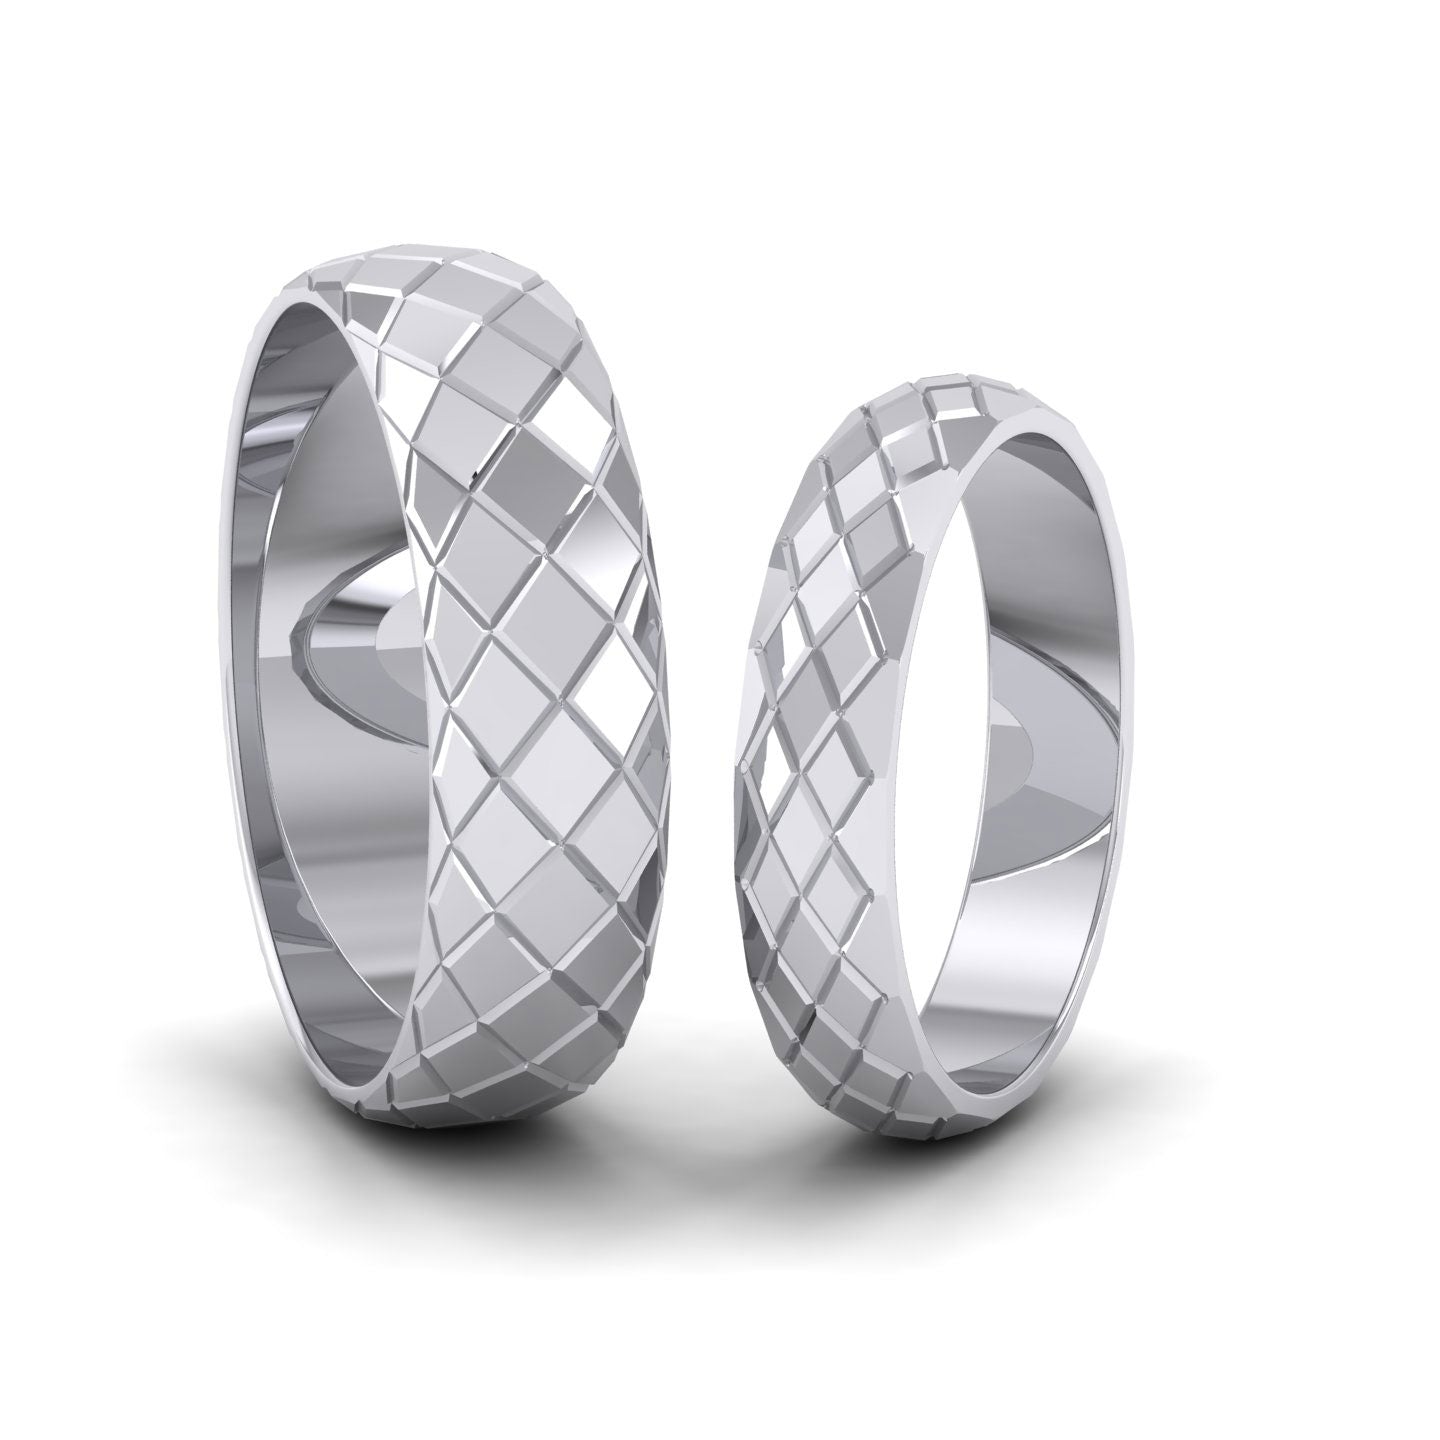 Facet And Line Harlequin Design 950 Palladium 6mm Wedding Ring